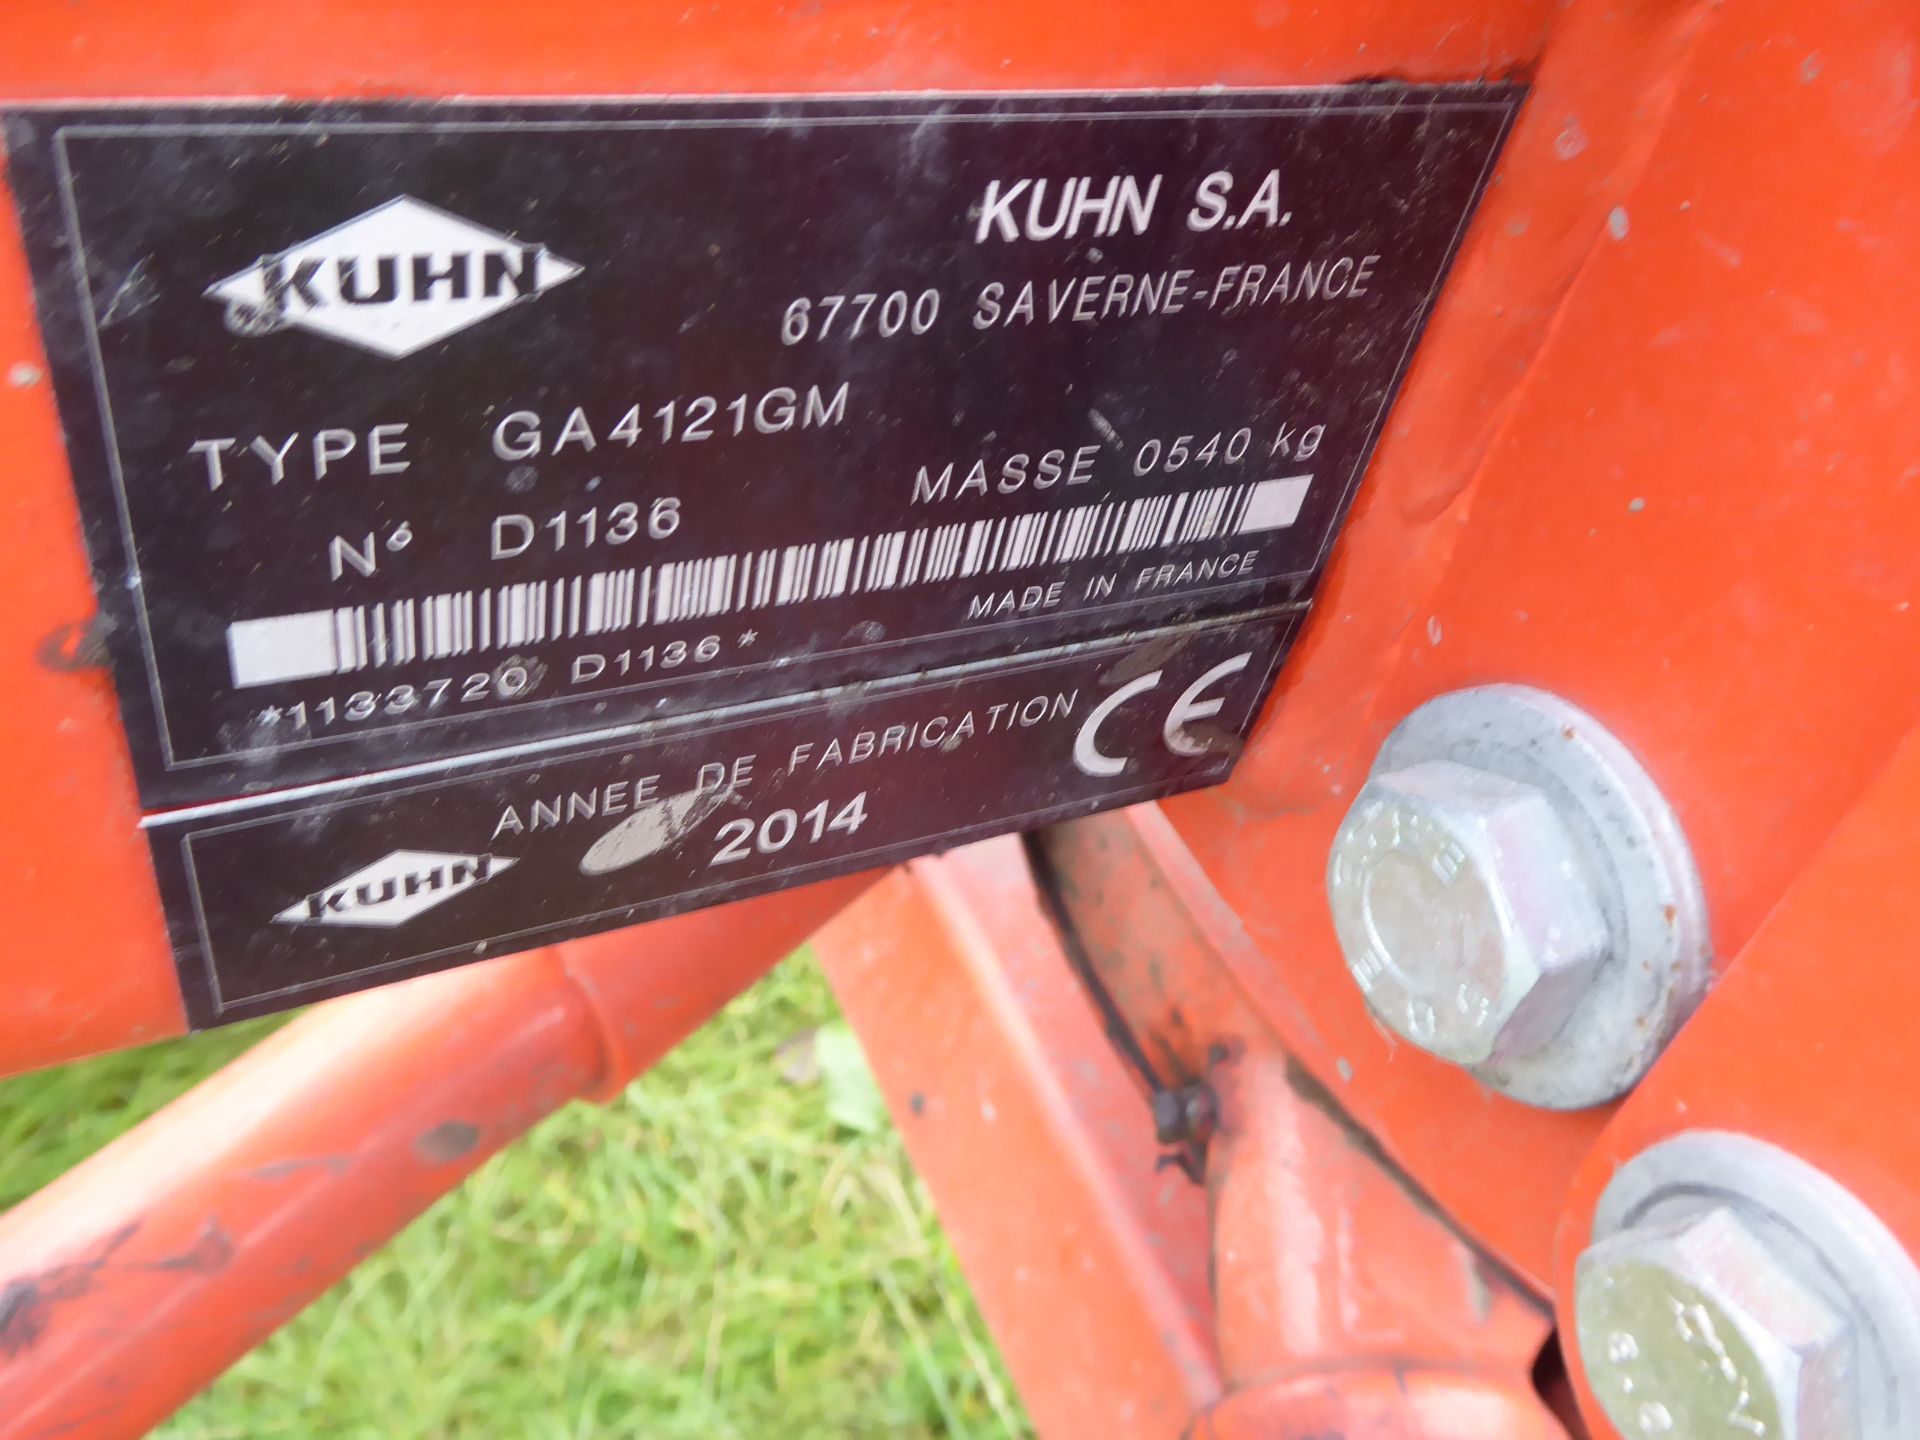 2014 Kuhn GA4121GM single rake, very good machine - Image 2 of 4